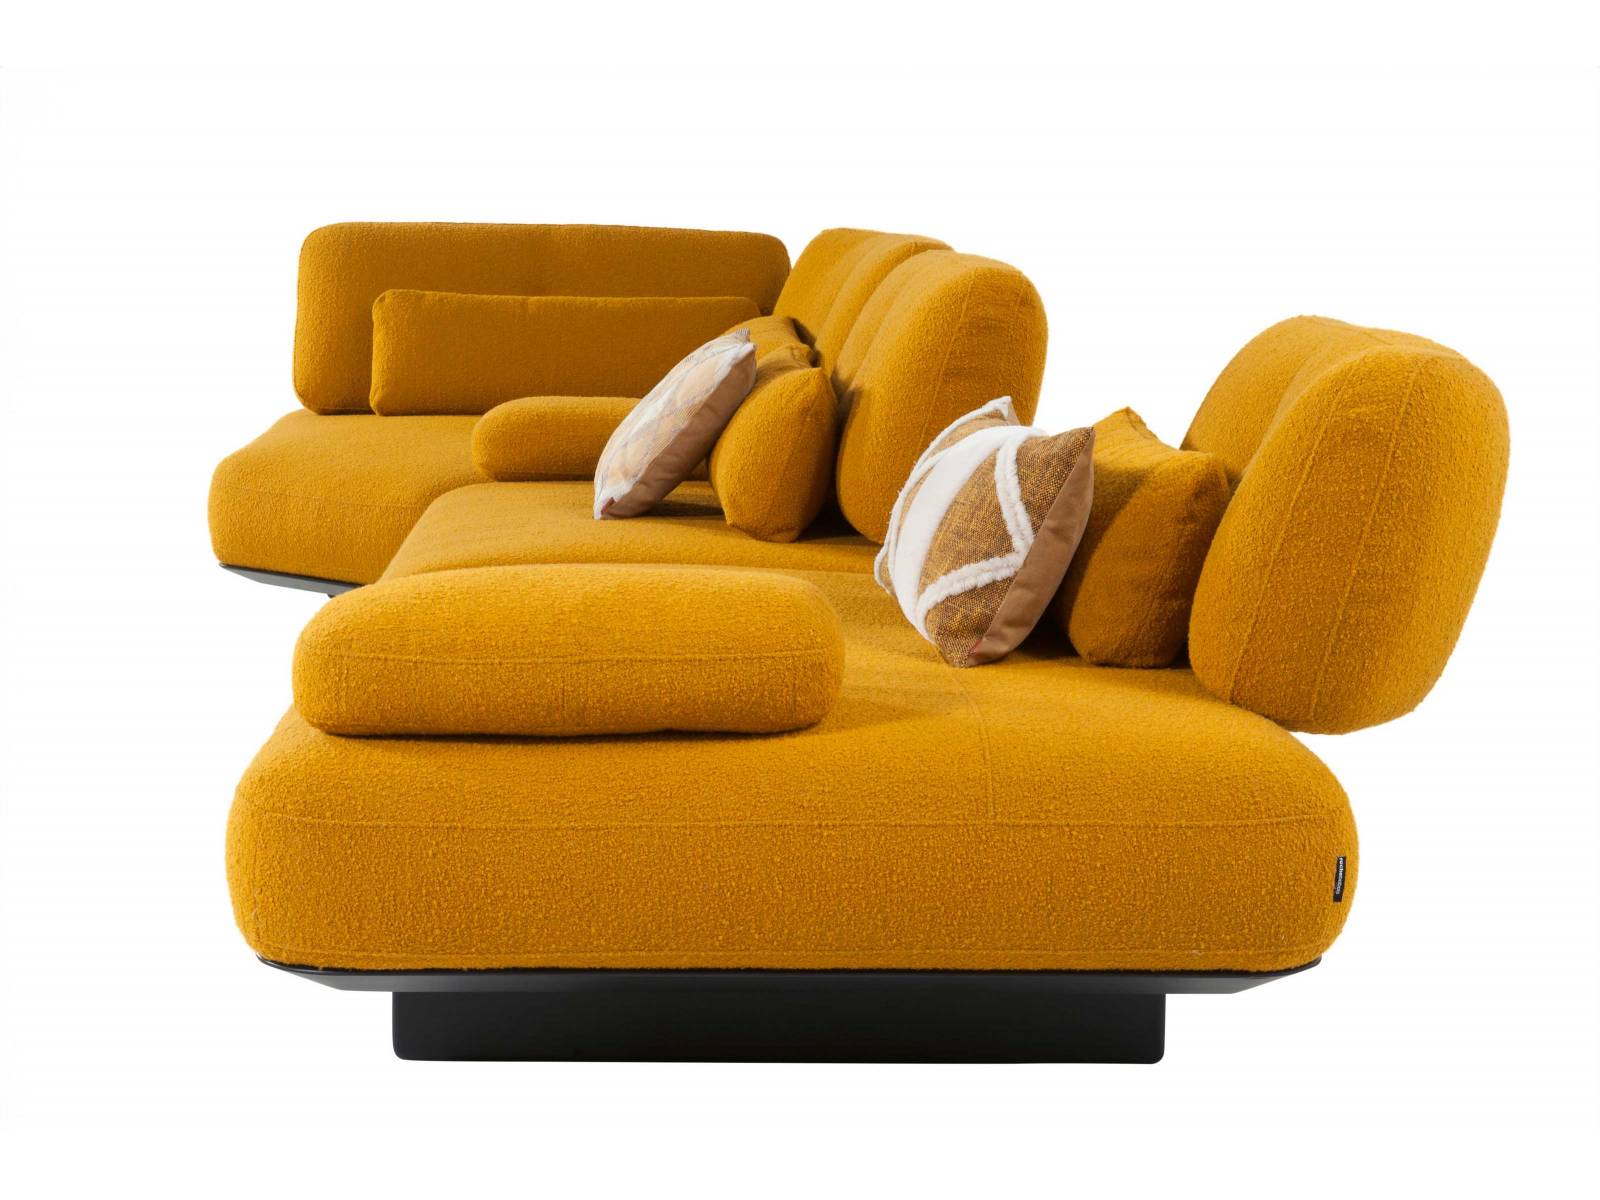 «A-Propos» Sofa, dieses Modell kommt ziemlich lässig daher und sorgt mit klappbaren Rückenlehnen für eine entspannte Sitz-Atmosphäre. Design: Maurizio Manzoni. Foto: Nicolas Gallon. ROCHE BOBOIS.